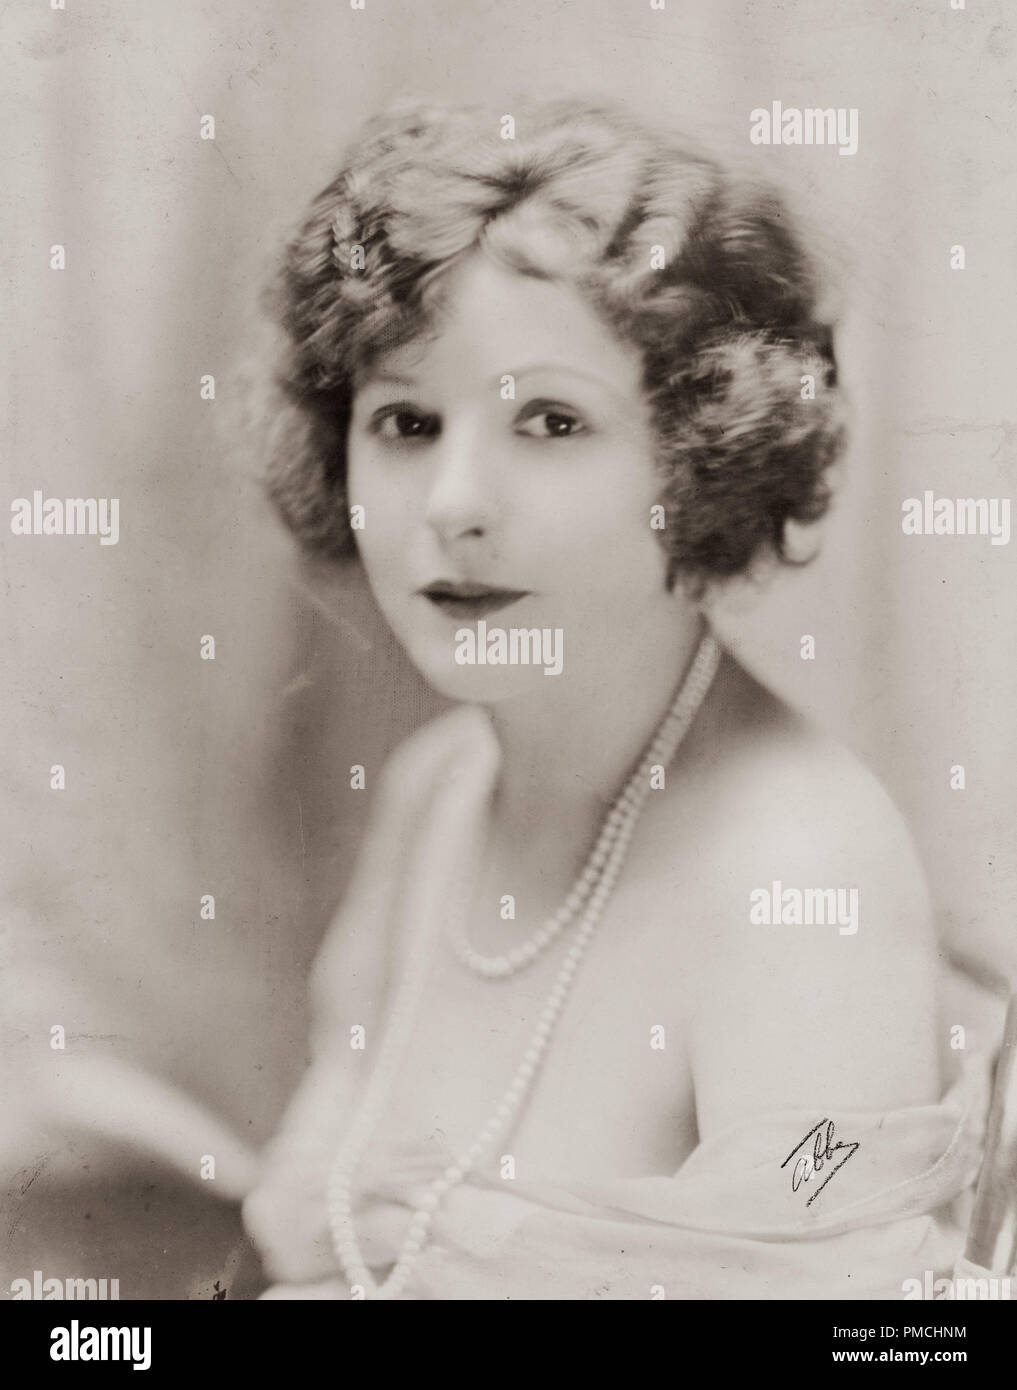 Norma Talmadge, in der "Ewige Flamme" 1922 Zugehörige erste Nationale Bilder. Foto von James Abbe Datei Referenz # 33636 666 THA Stockfoto